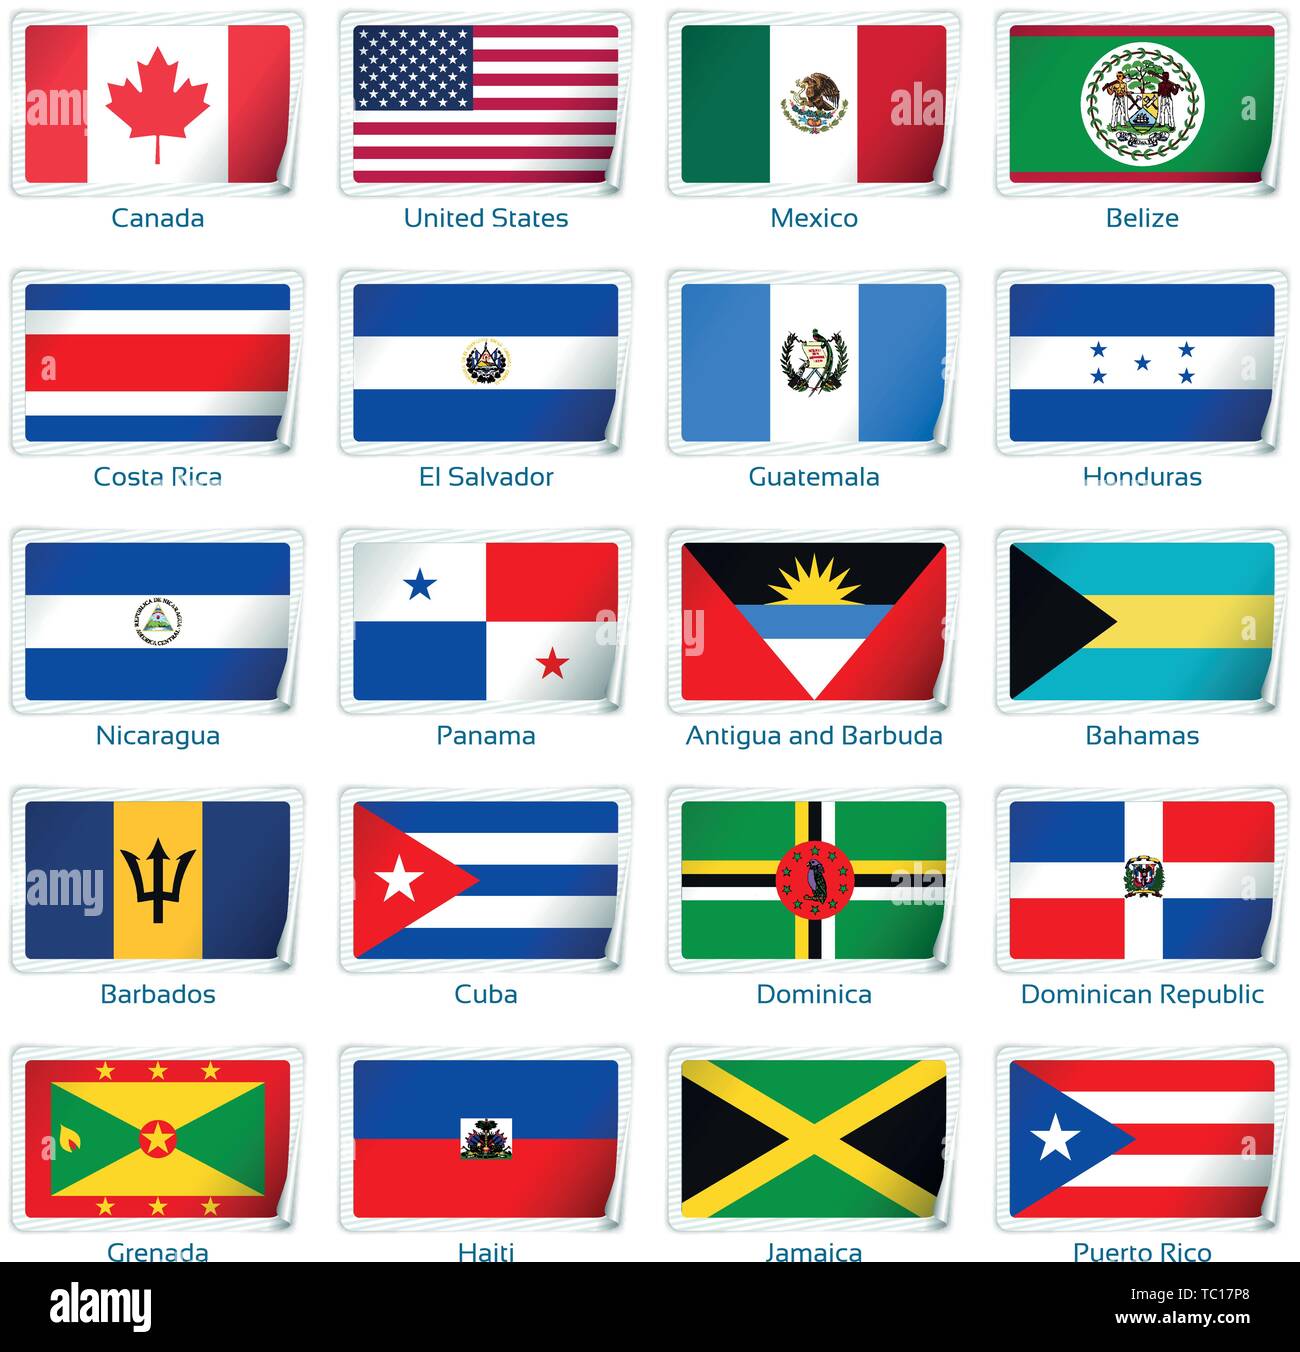 Bandera de cuba y puerto rico fotografías e imágenes de alta resolución -  Alamy